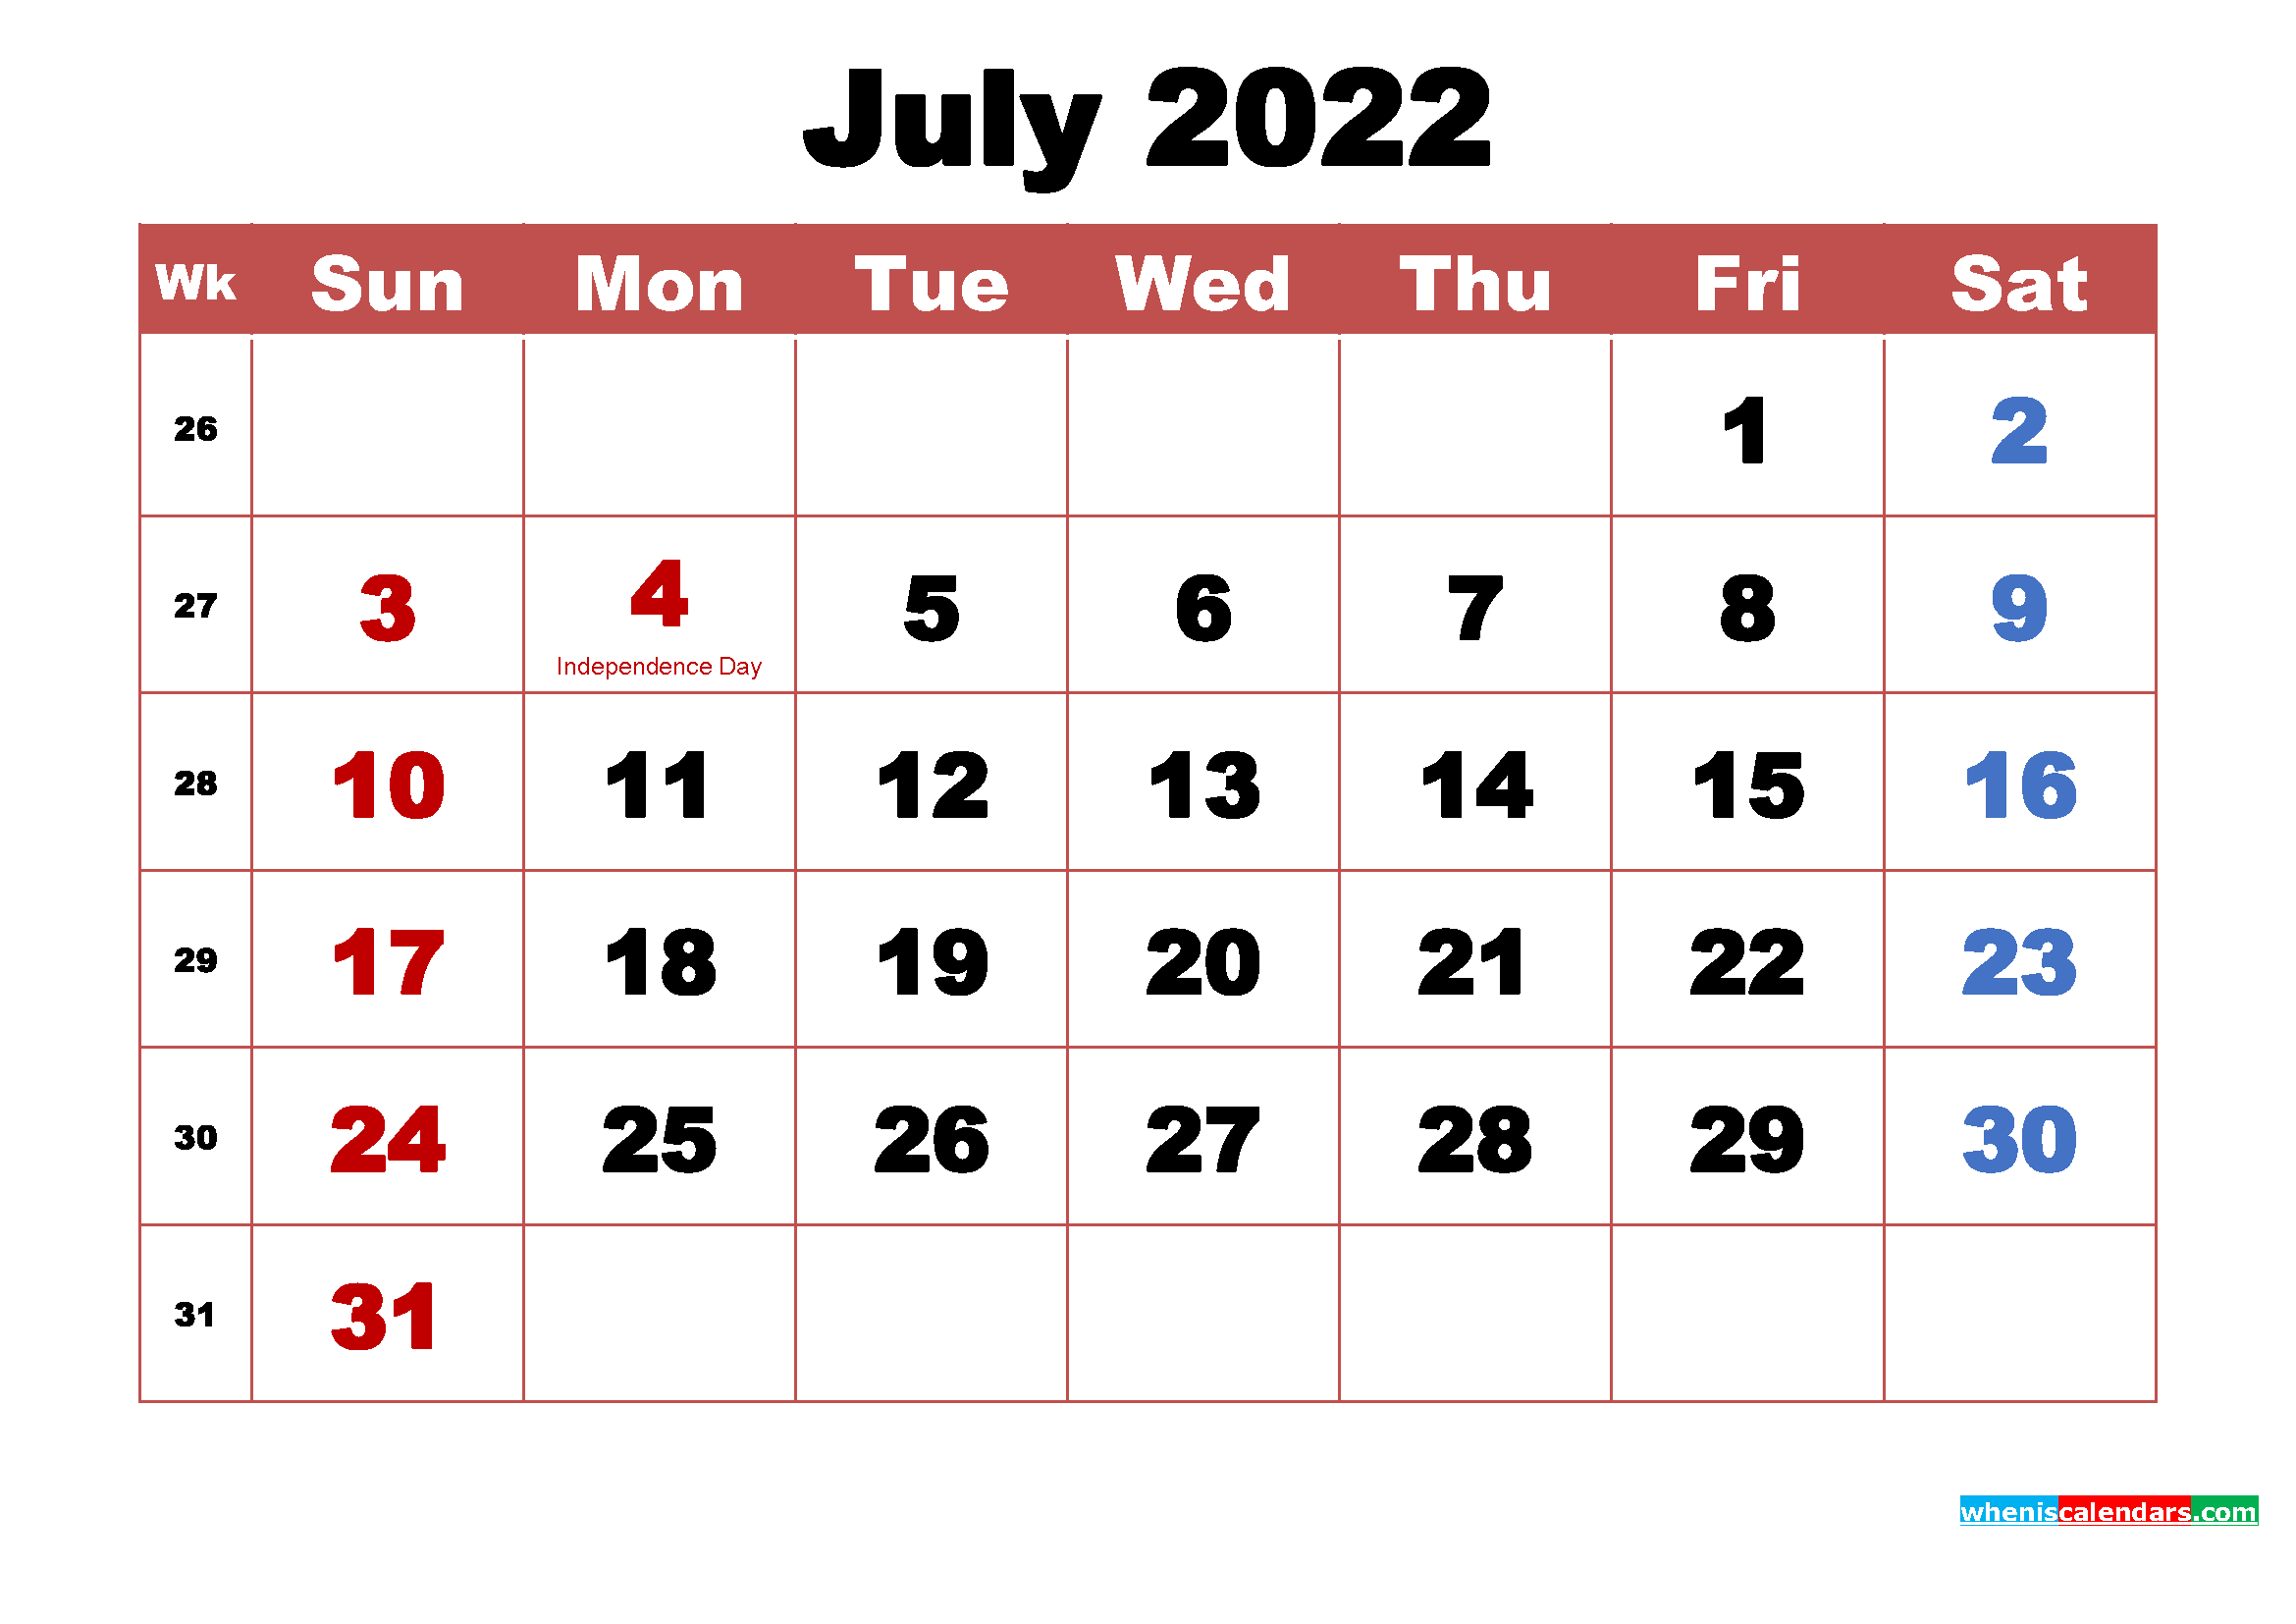 July 2022 Calendar Wallpapers High Resolution